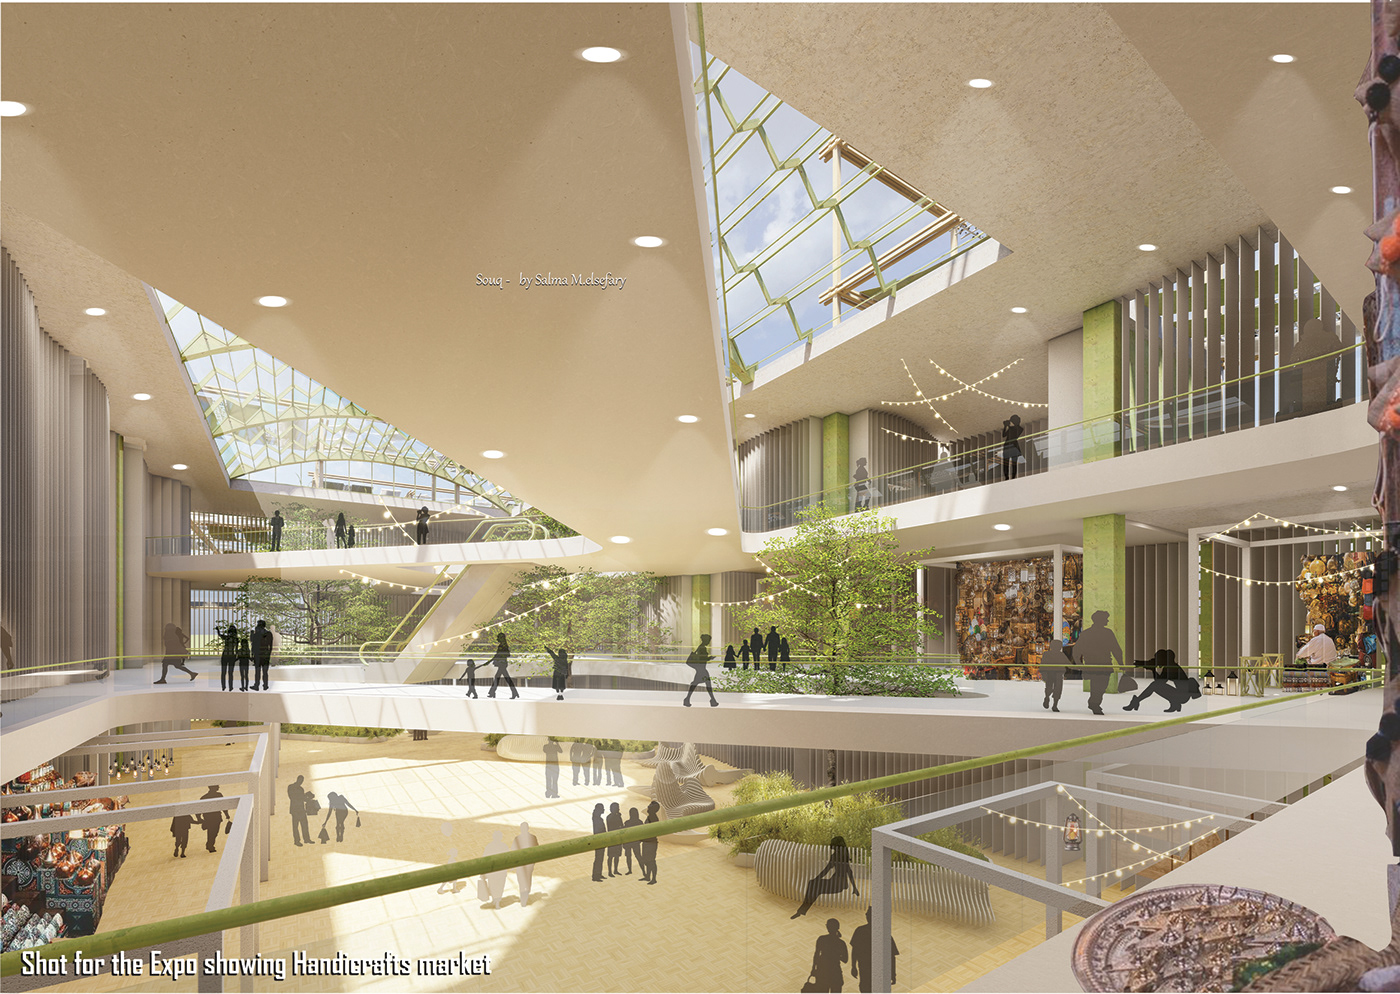 culture graduation graduation project heritage Investment Park portsaid Retail Shopping souq